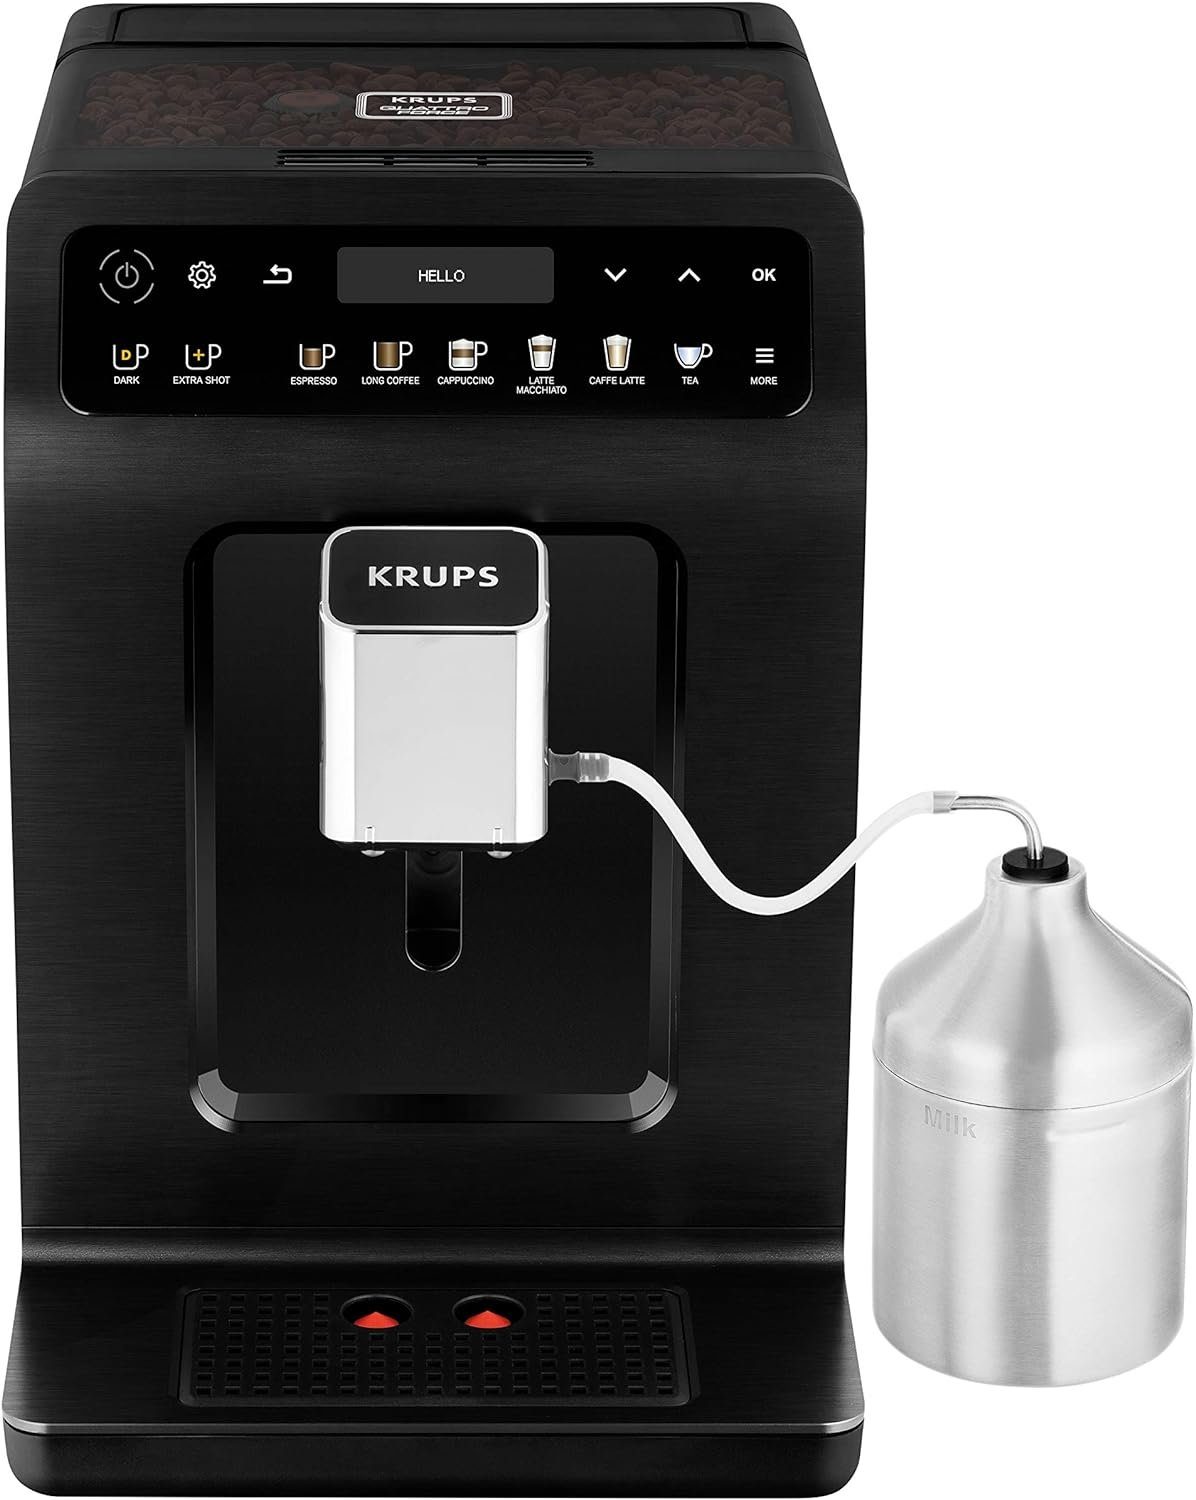 Krups Kaffeevollautomat Krups Kaffeevollautomat EA8948 Evidence Plus | Kaffeevollautomaten